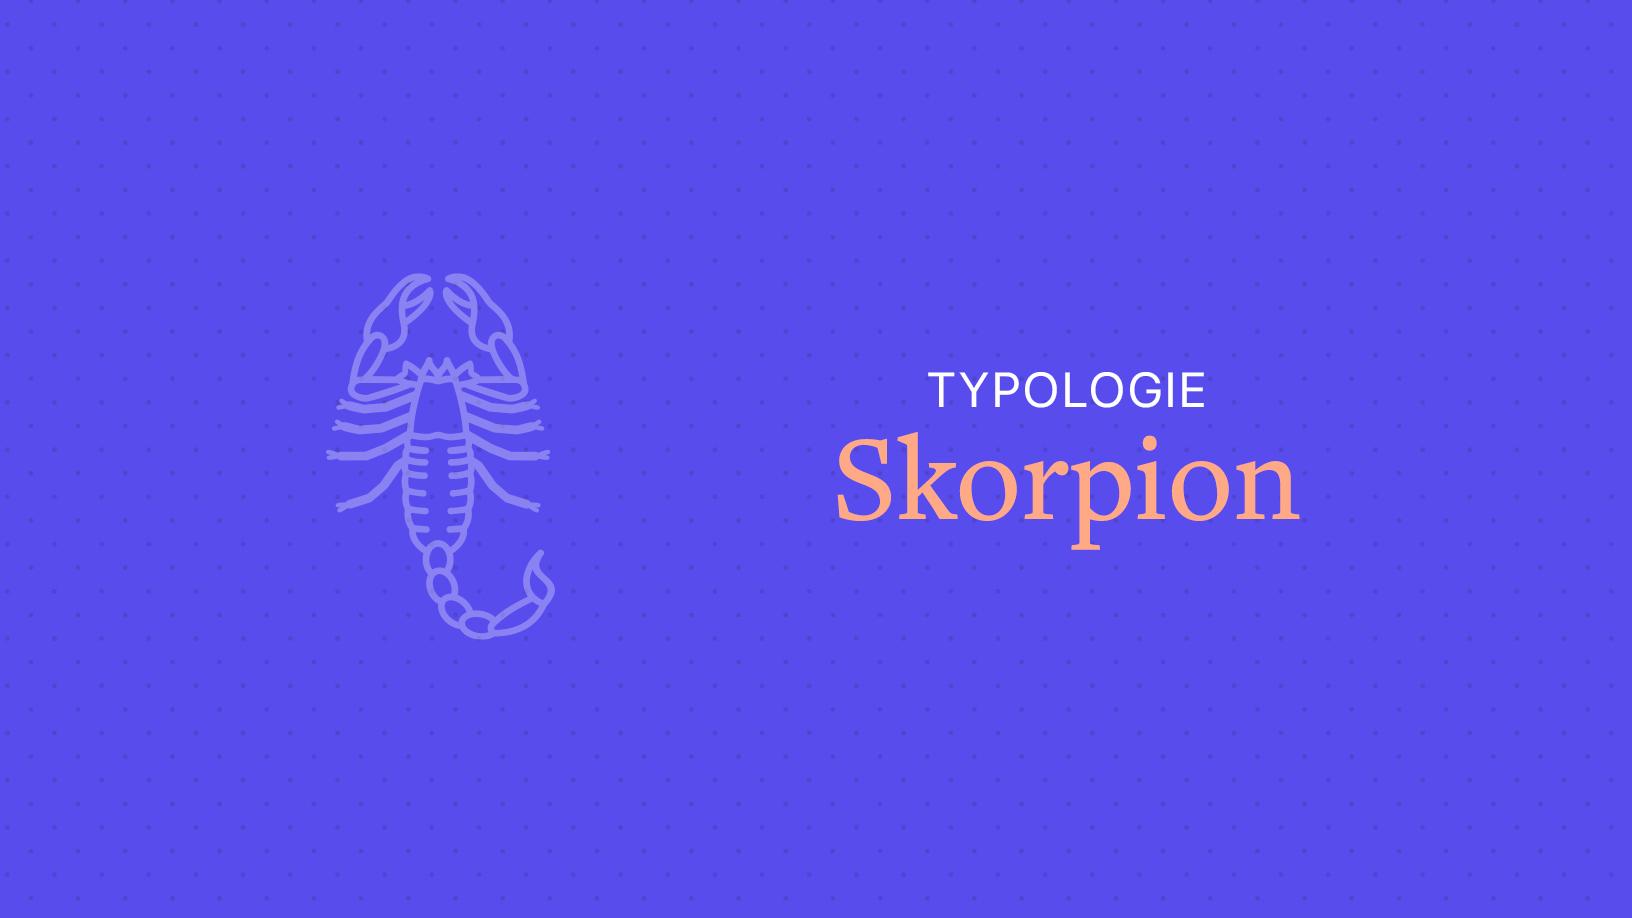 horoskop skorpion single frau